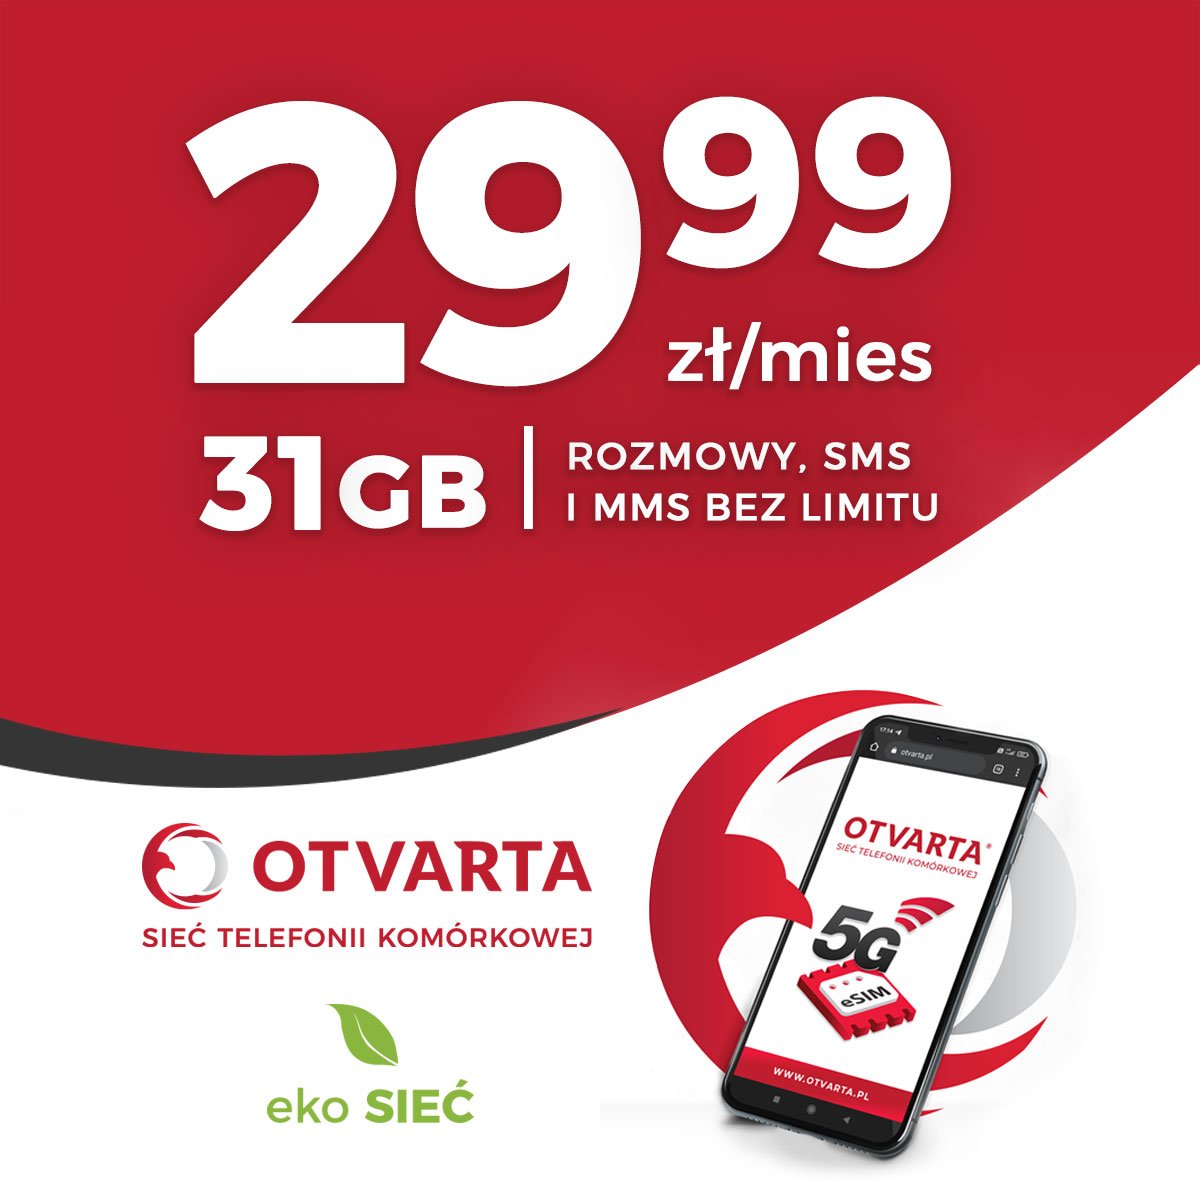 OTVARTA, jako jeden z pierwszych w Polsce operatorów, udostępnił innowacyjny standard 5G, który zapewnia najszybszy internet na świecie. Internet 5G zapewnia transfer na poziomie 600 Mb/s, a to dopiero początek. Infrastruktura 5G w Polsce wciąż się rozwija i szybkość tego internetu będzie tylko rosnąć. 